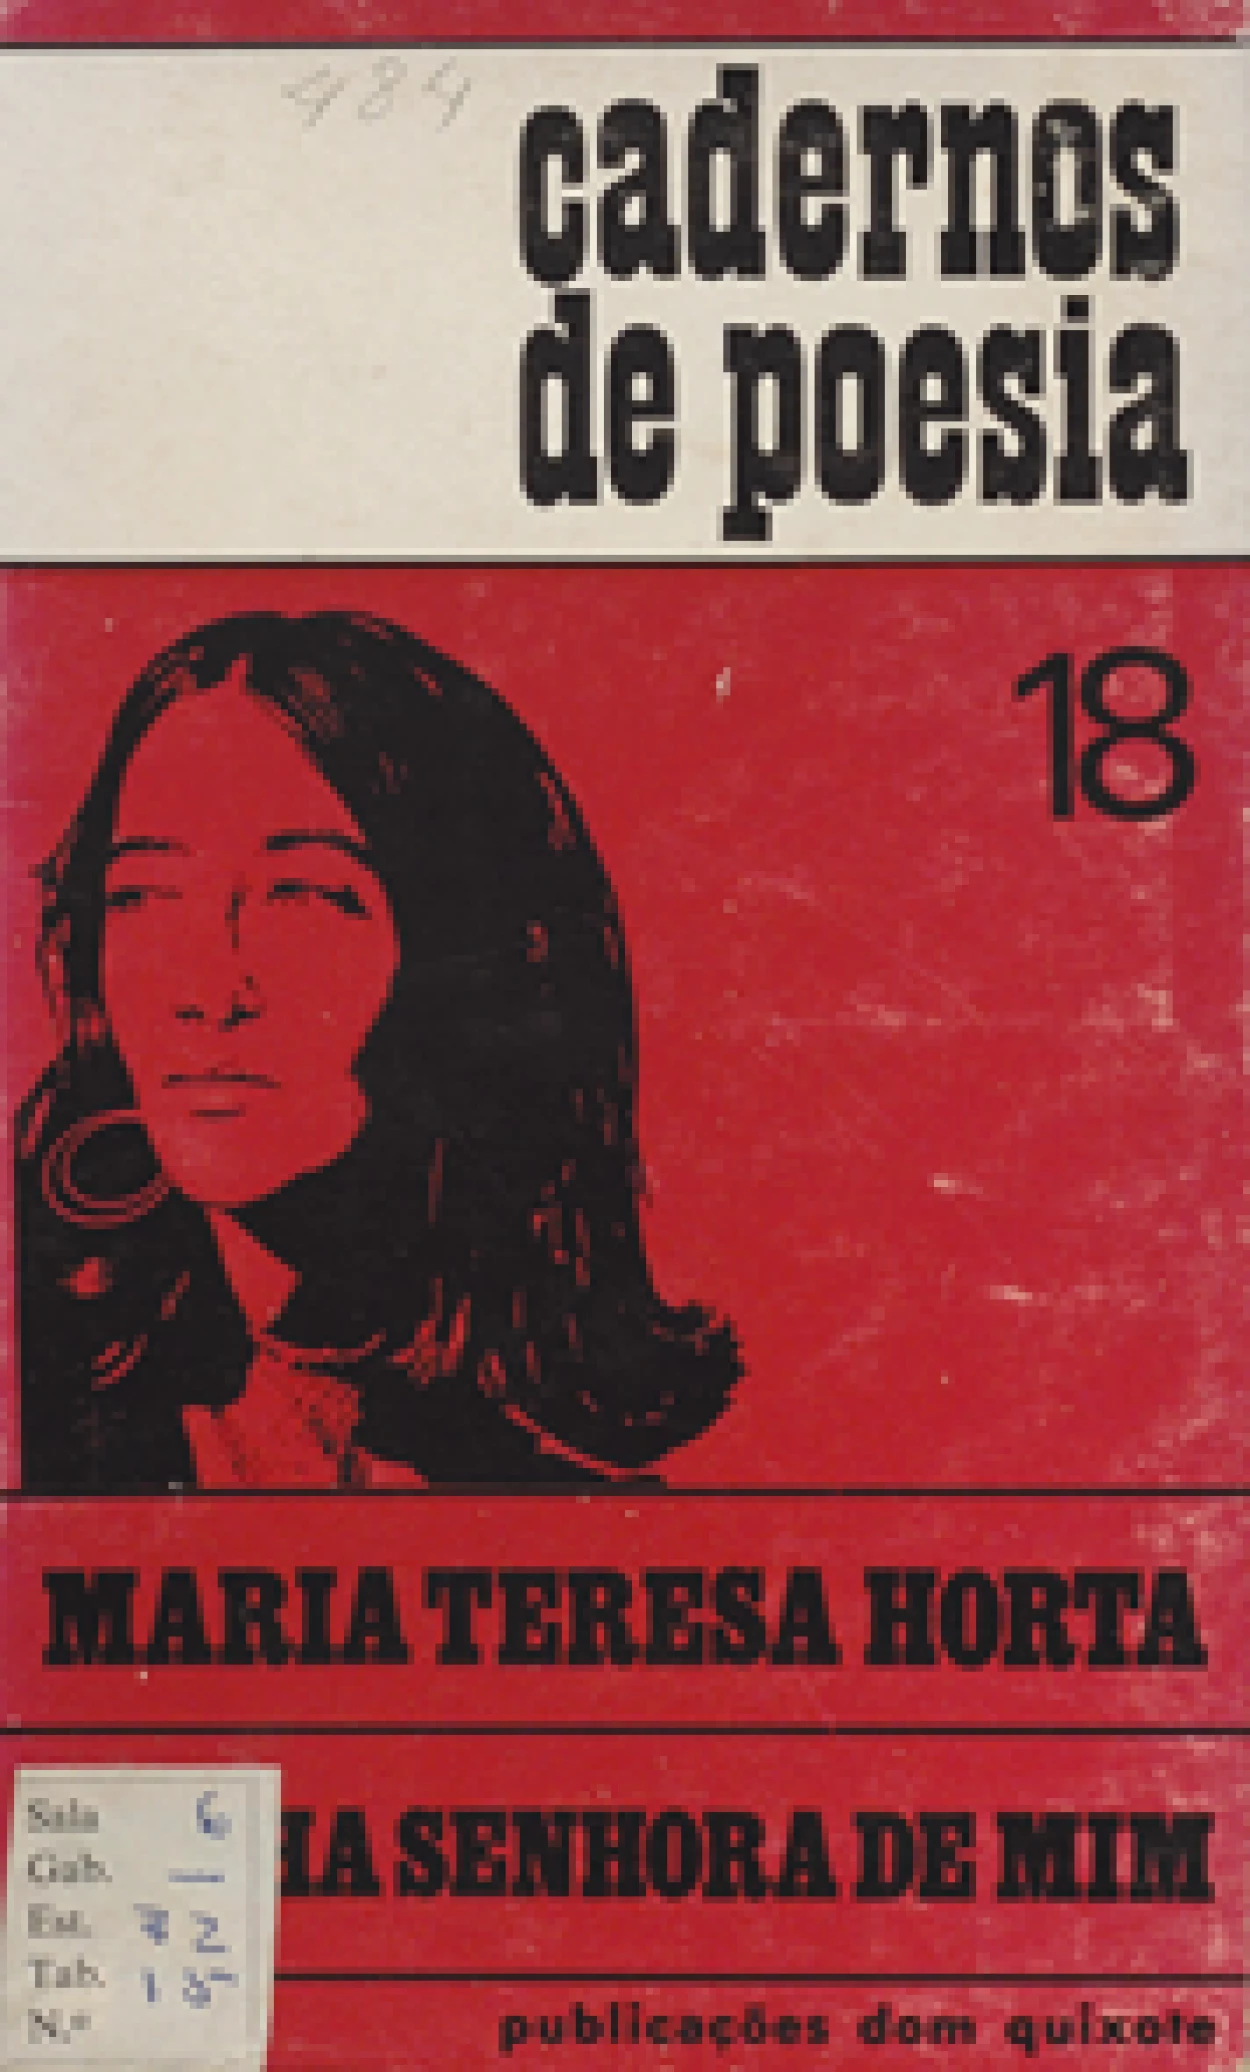 Horta, Maria Teresa, 1937-
Minha senhora de mim. 
Lisboa : Publicações Dom Quixote, [1971].